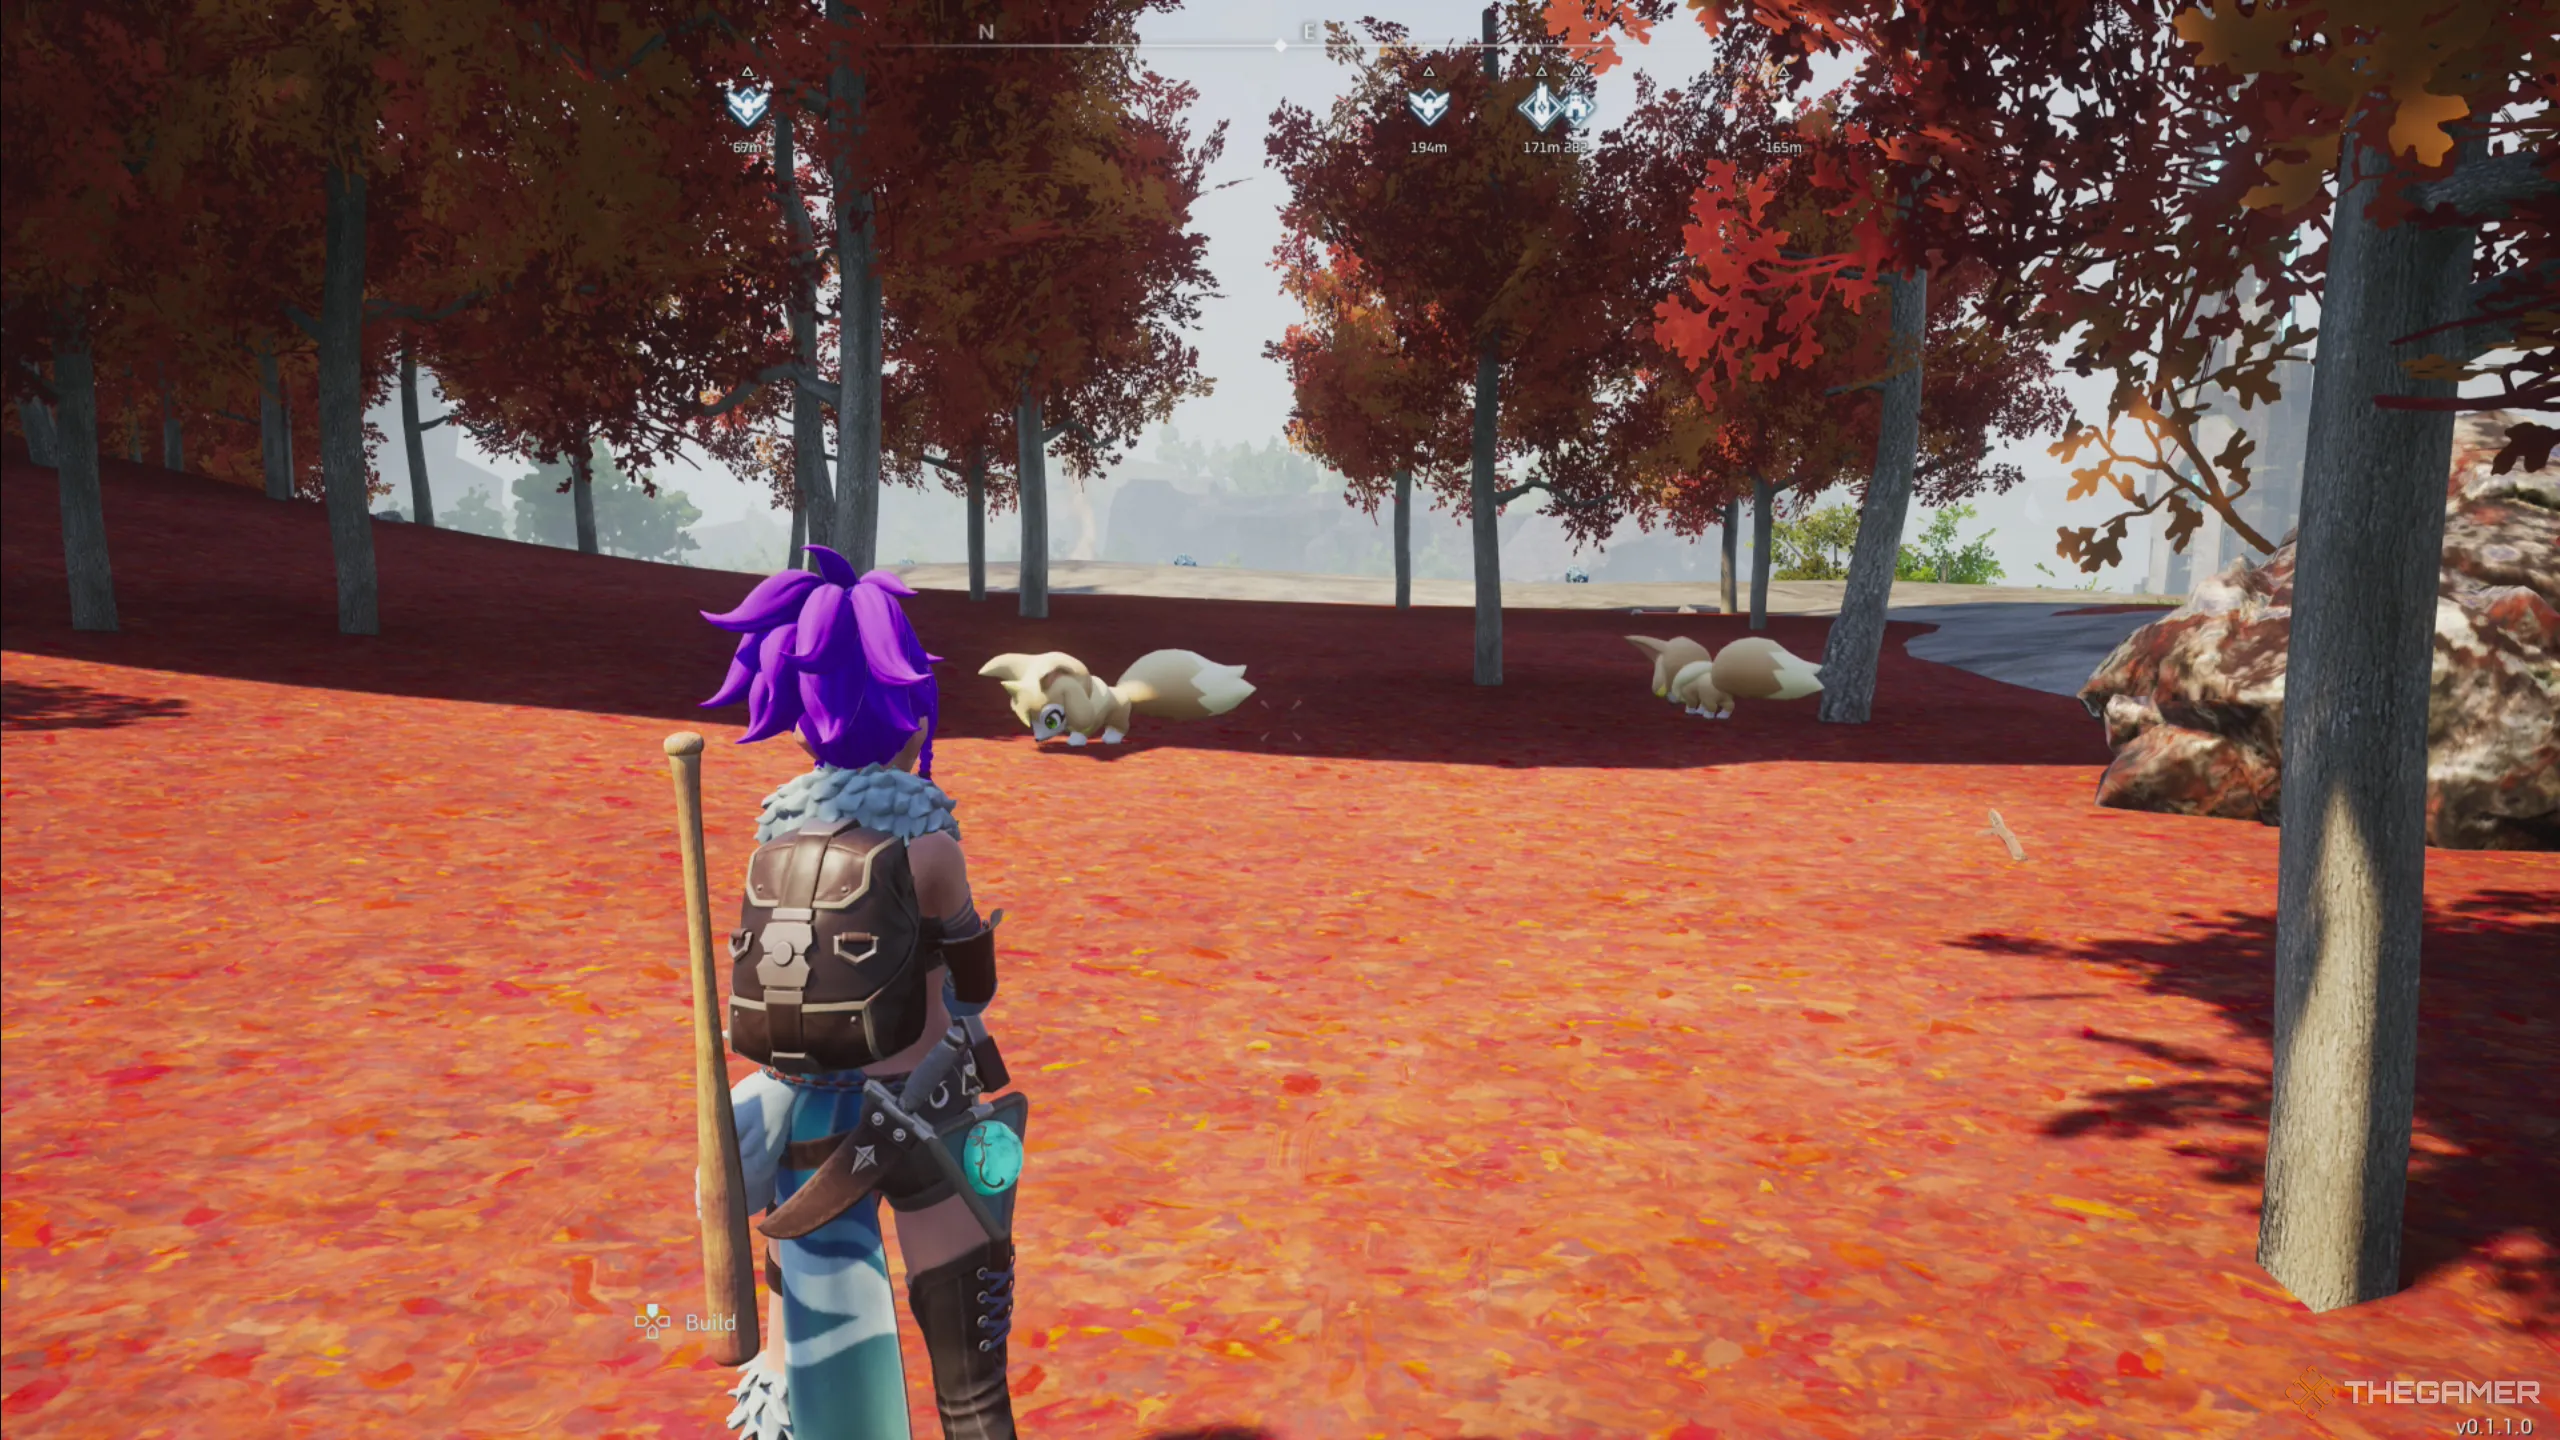 Palworld: 真っ赤な草と木々の中で2匹の Vixy を見て立っている様子